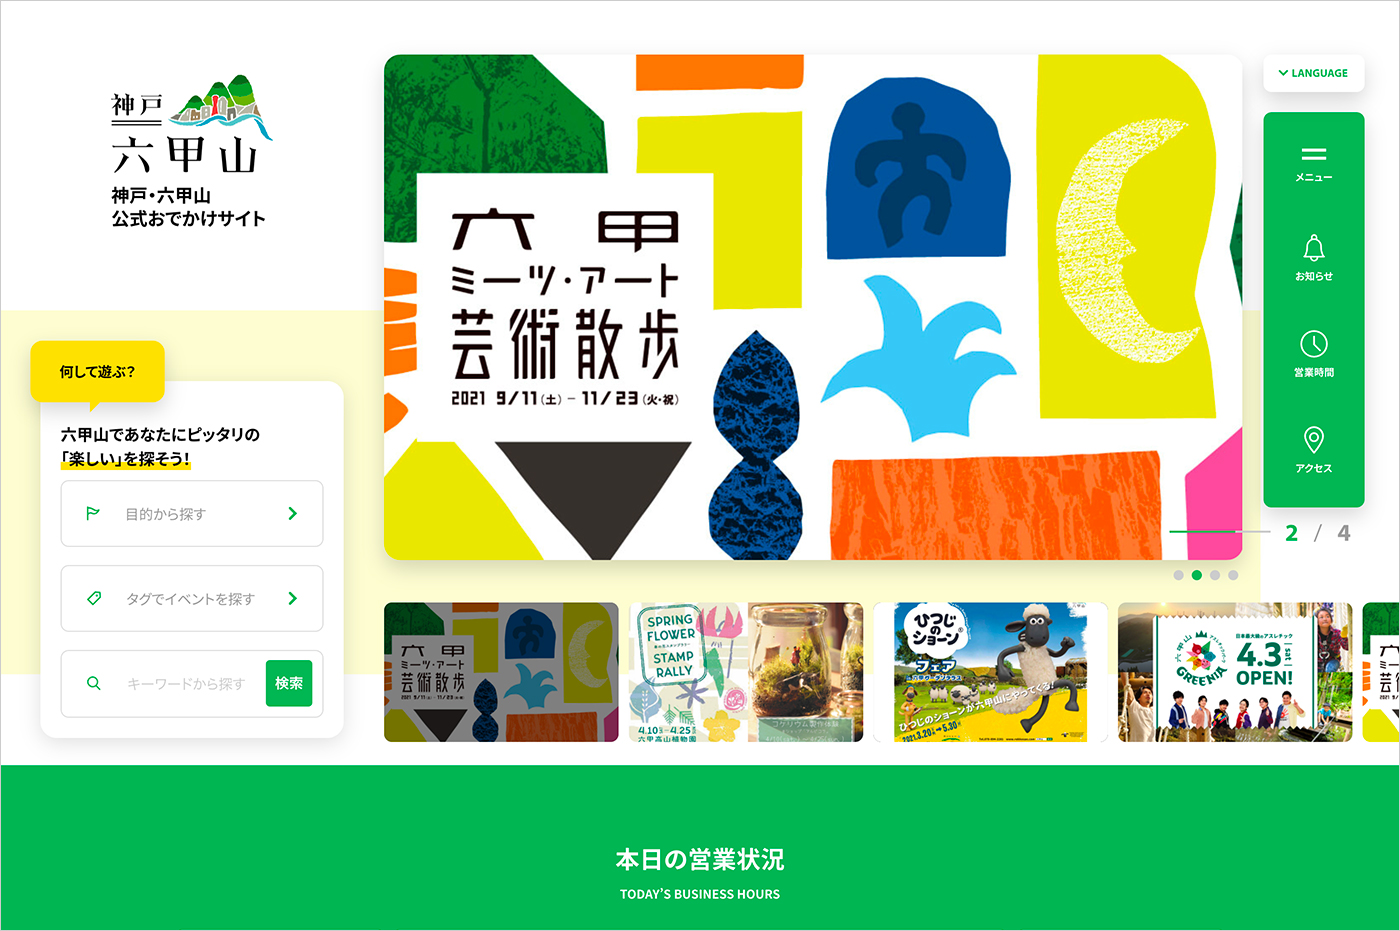 神戸・六甲山 公式おでかけサイトウェブサイトの画面キャプチャ画像